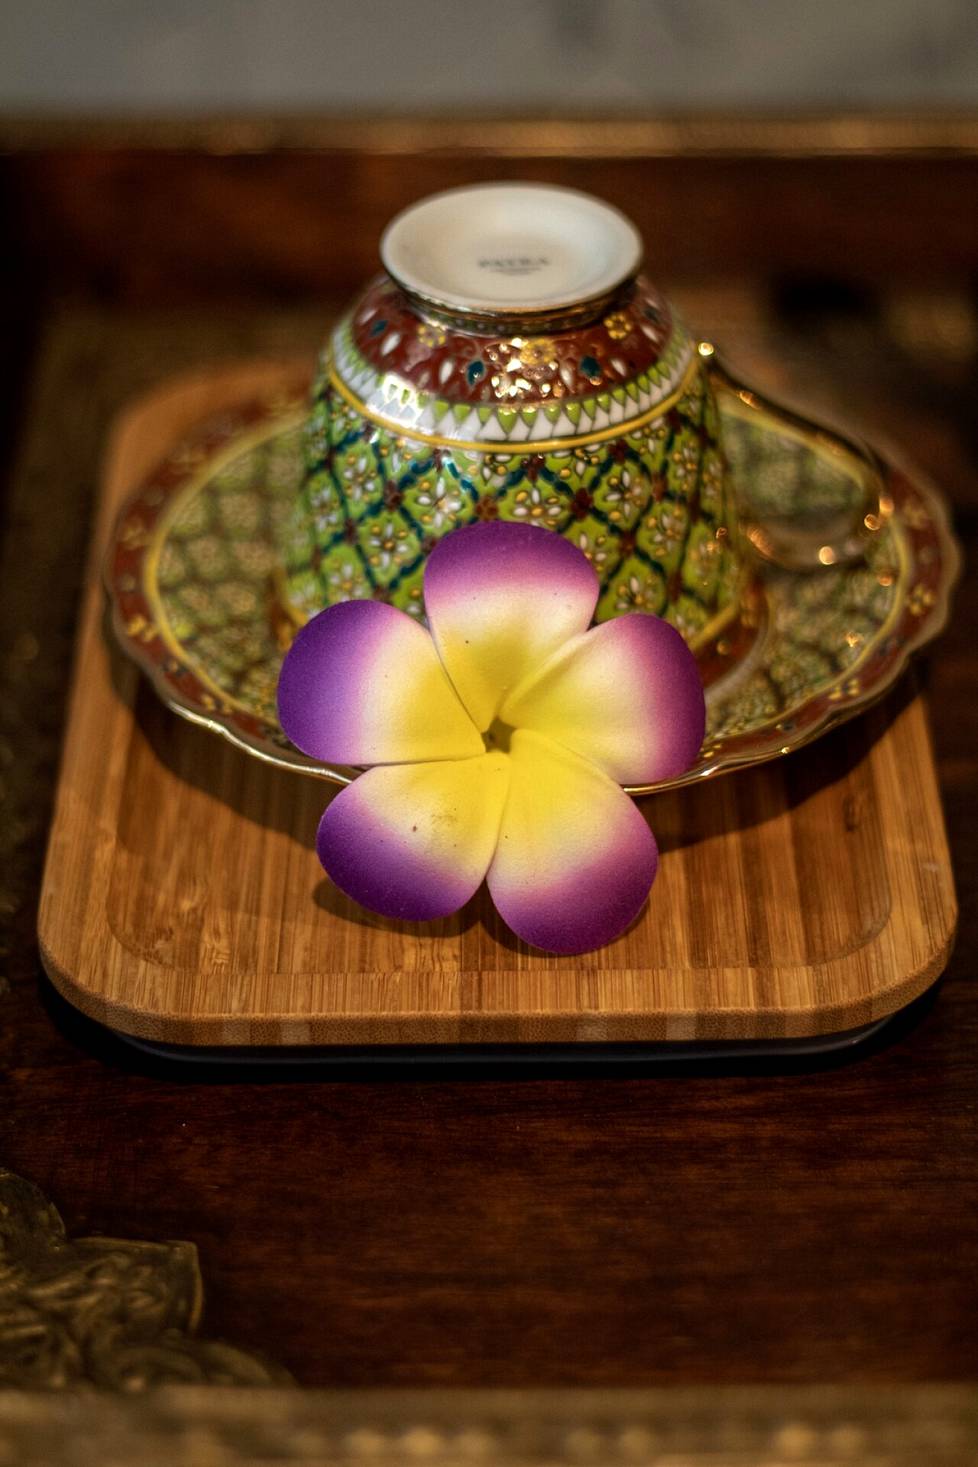 Hieronnan lomassa voi nauttia rentouttavan kupposen thaimaalaista teetä.